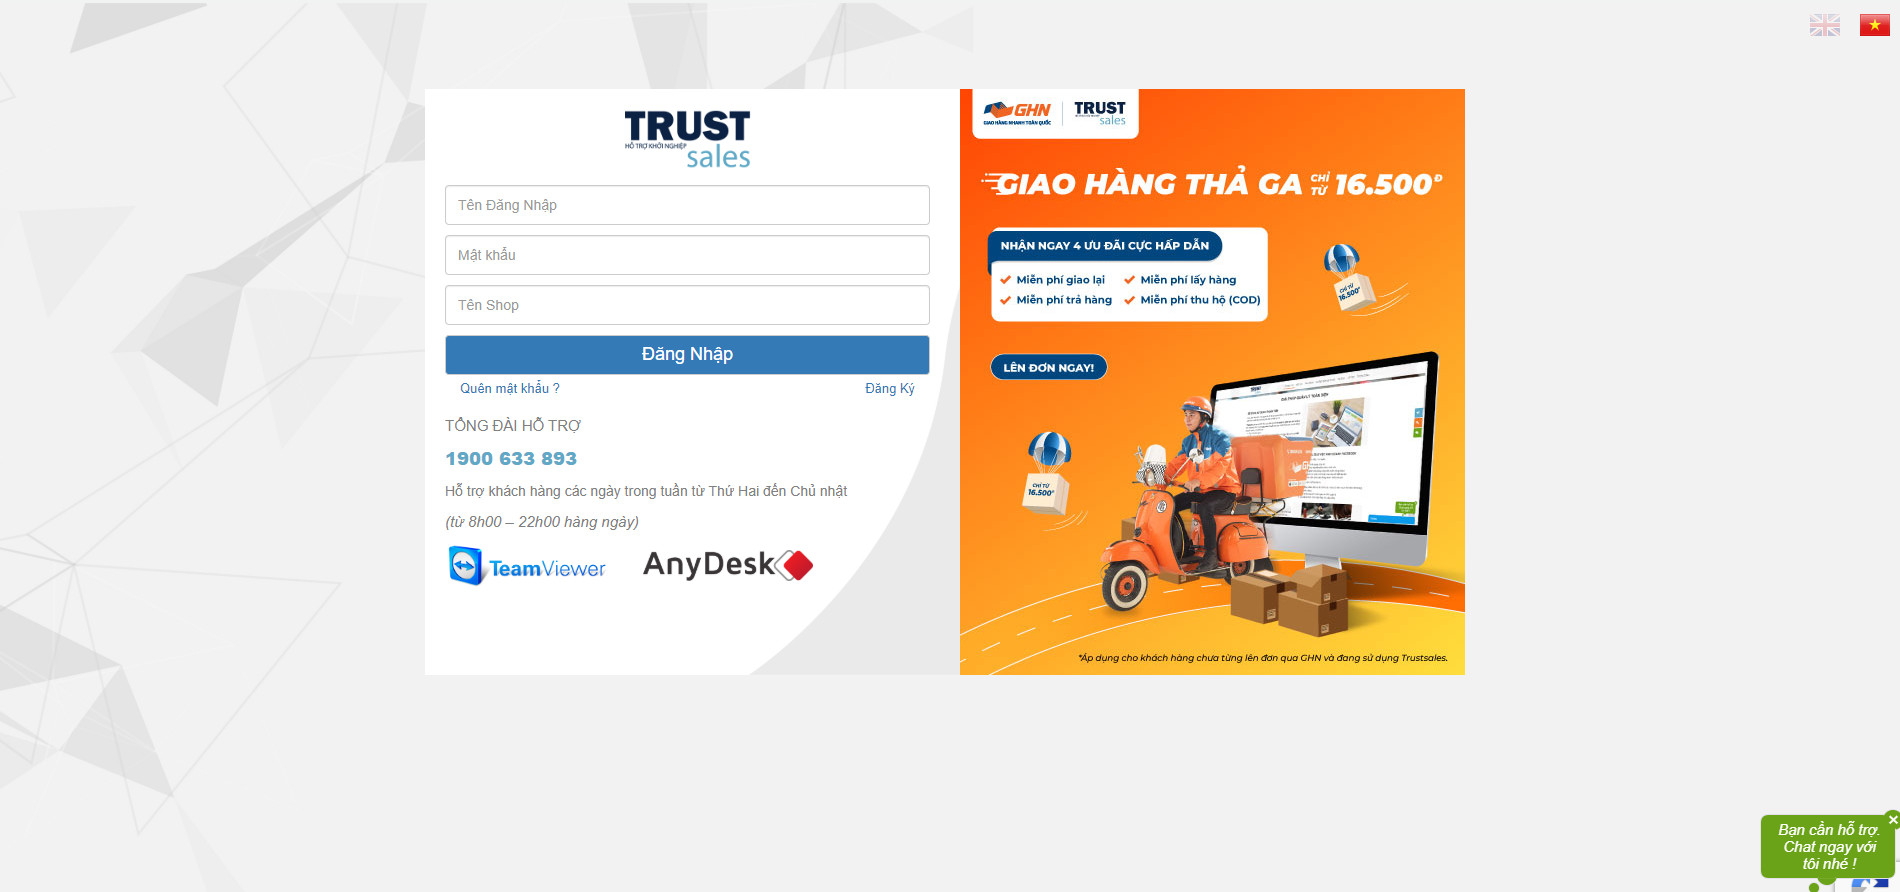 Giao hàng thả ga – chọn ngay GHN trên phần mềm quản lý bán hàng Trustsales.vn